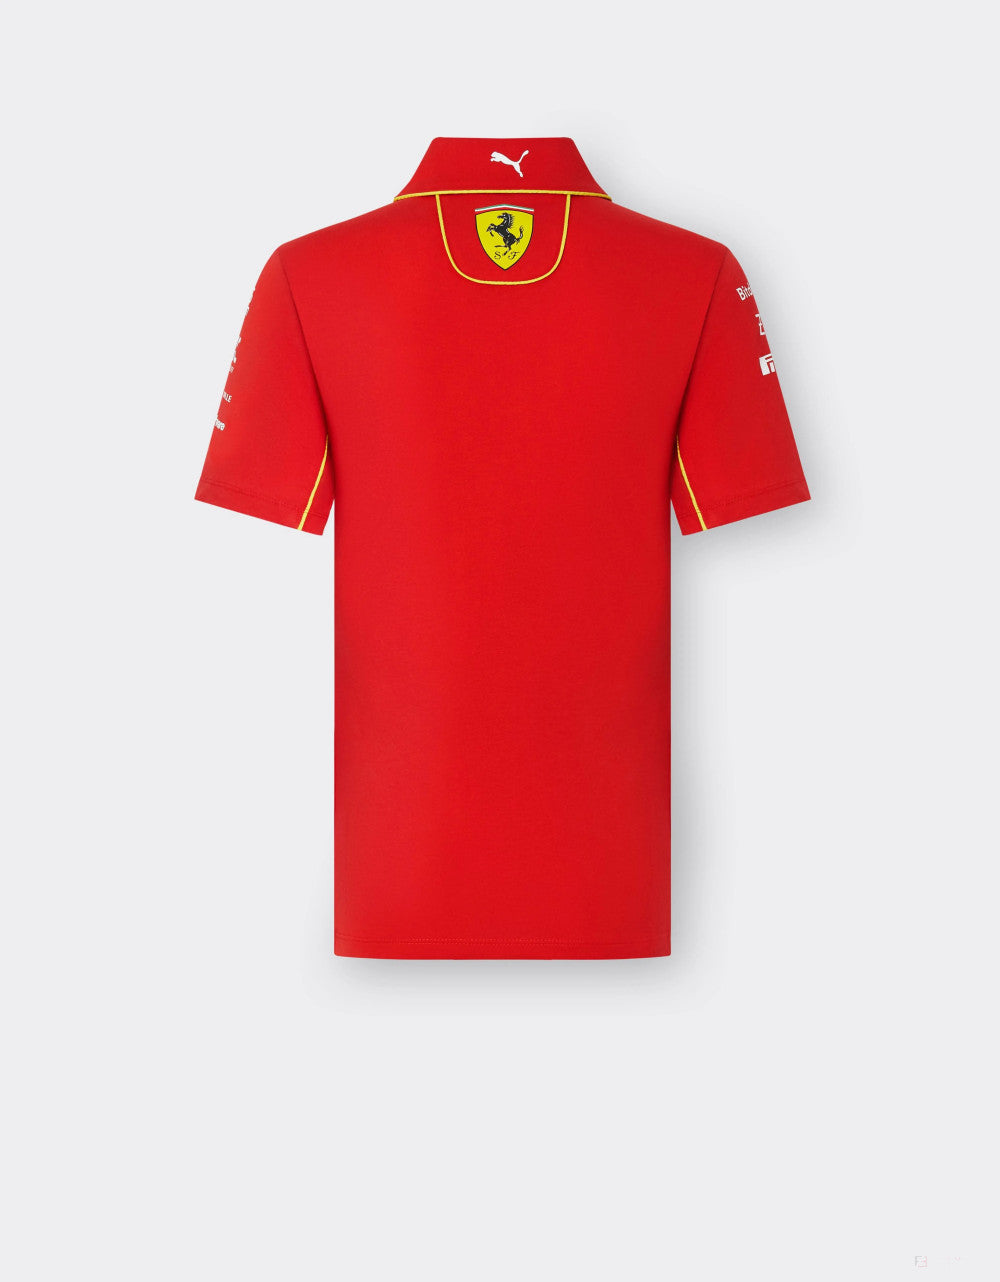 Ferrari polo, Puma, team, women, red, 2024